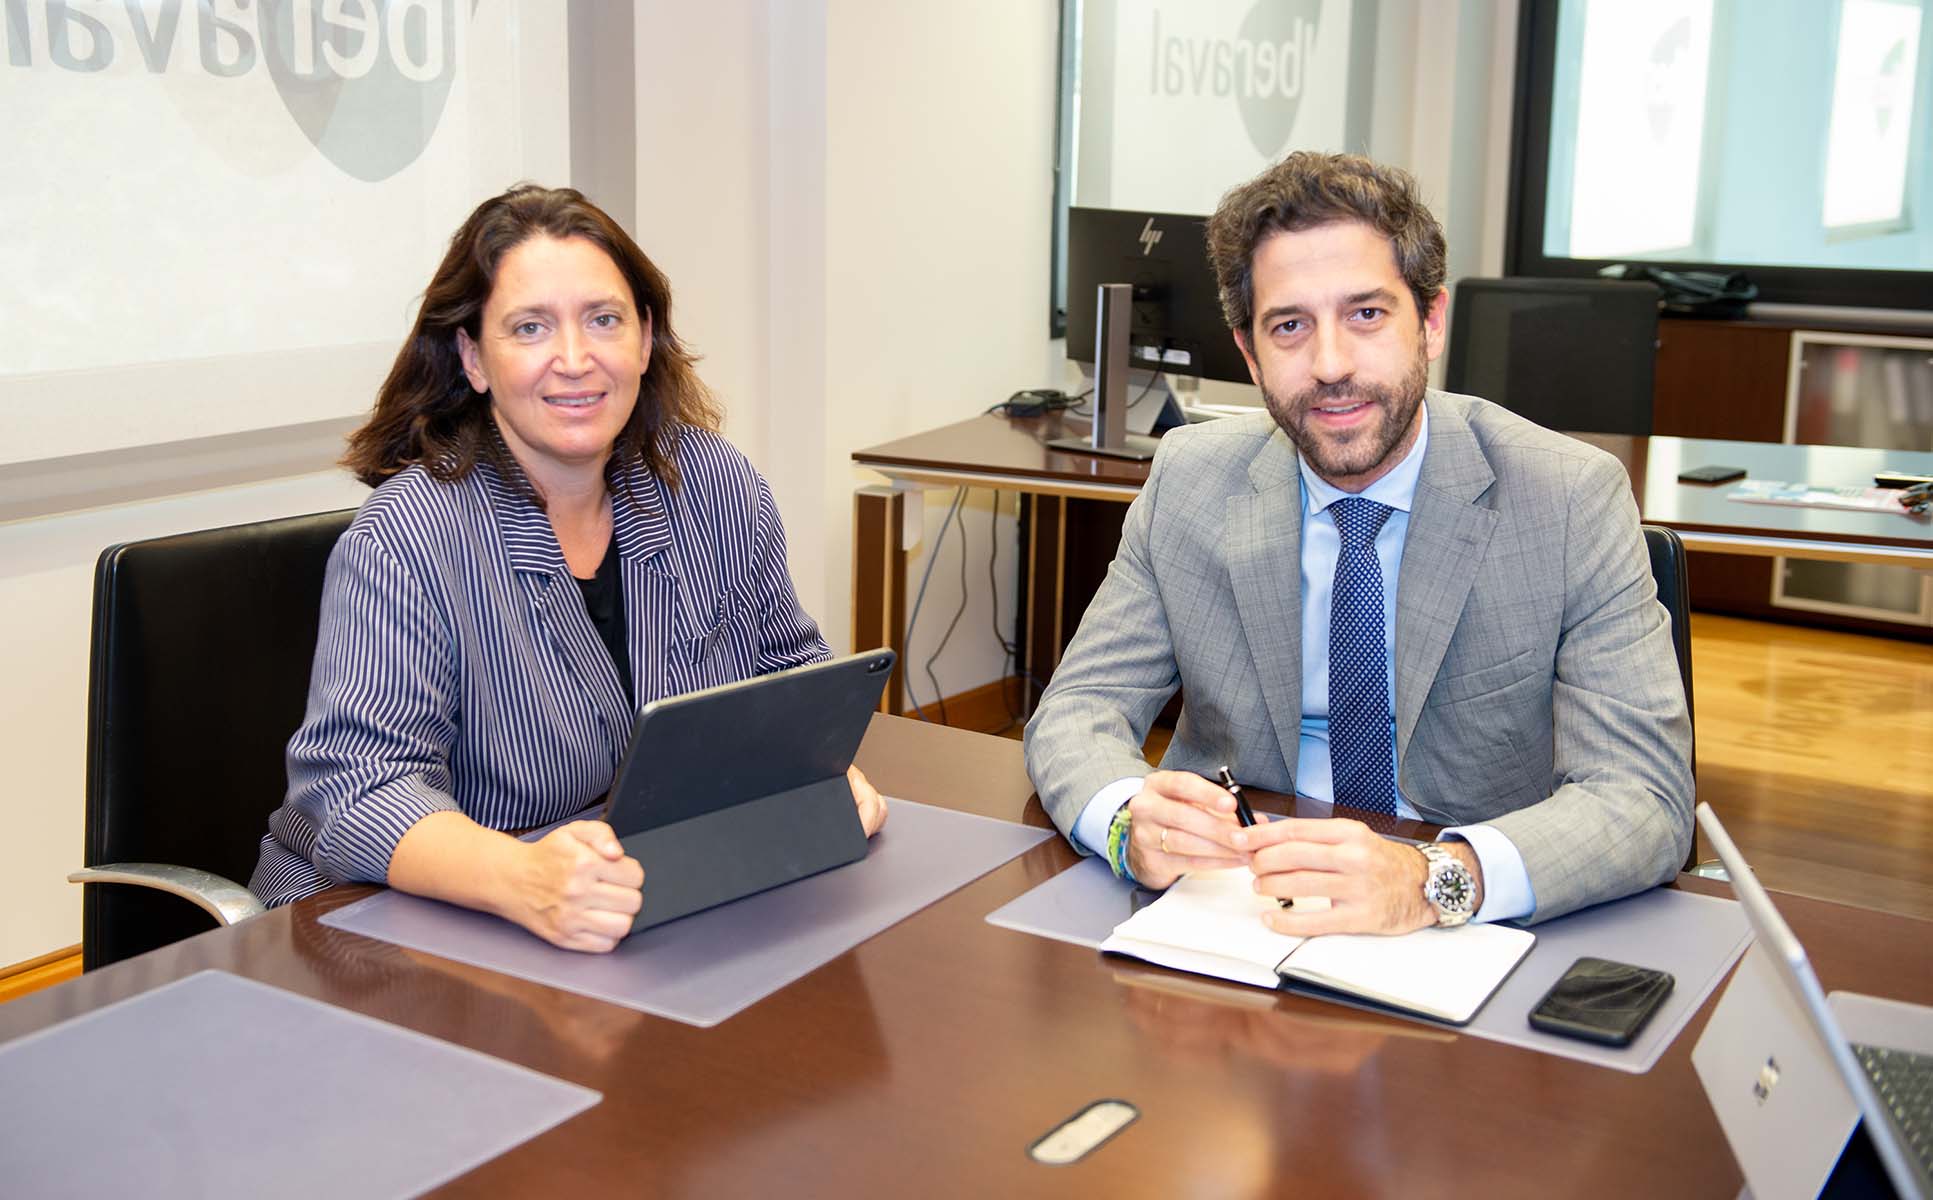 La consejera Ana Vizcaíno y el presidente de Iberaval, César Pontvianne, en una reunión, a finales de 2019